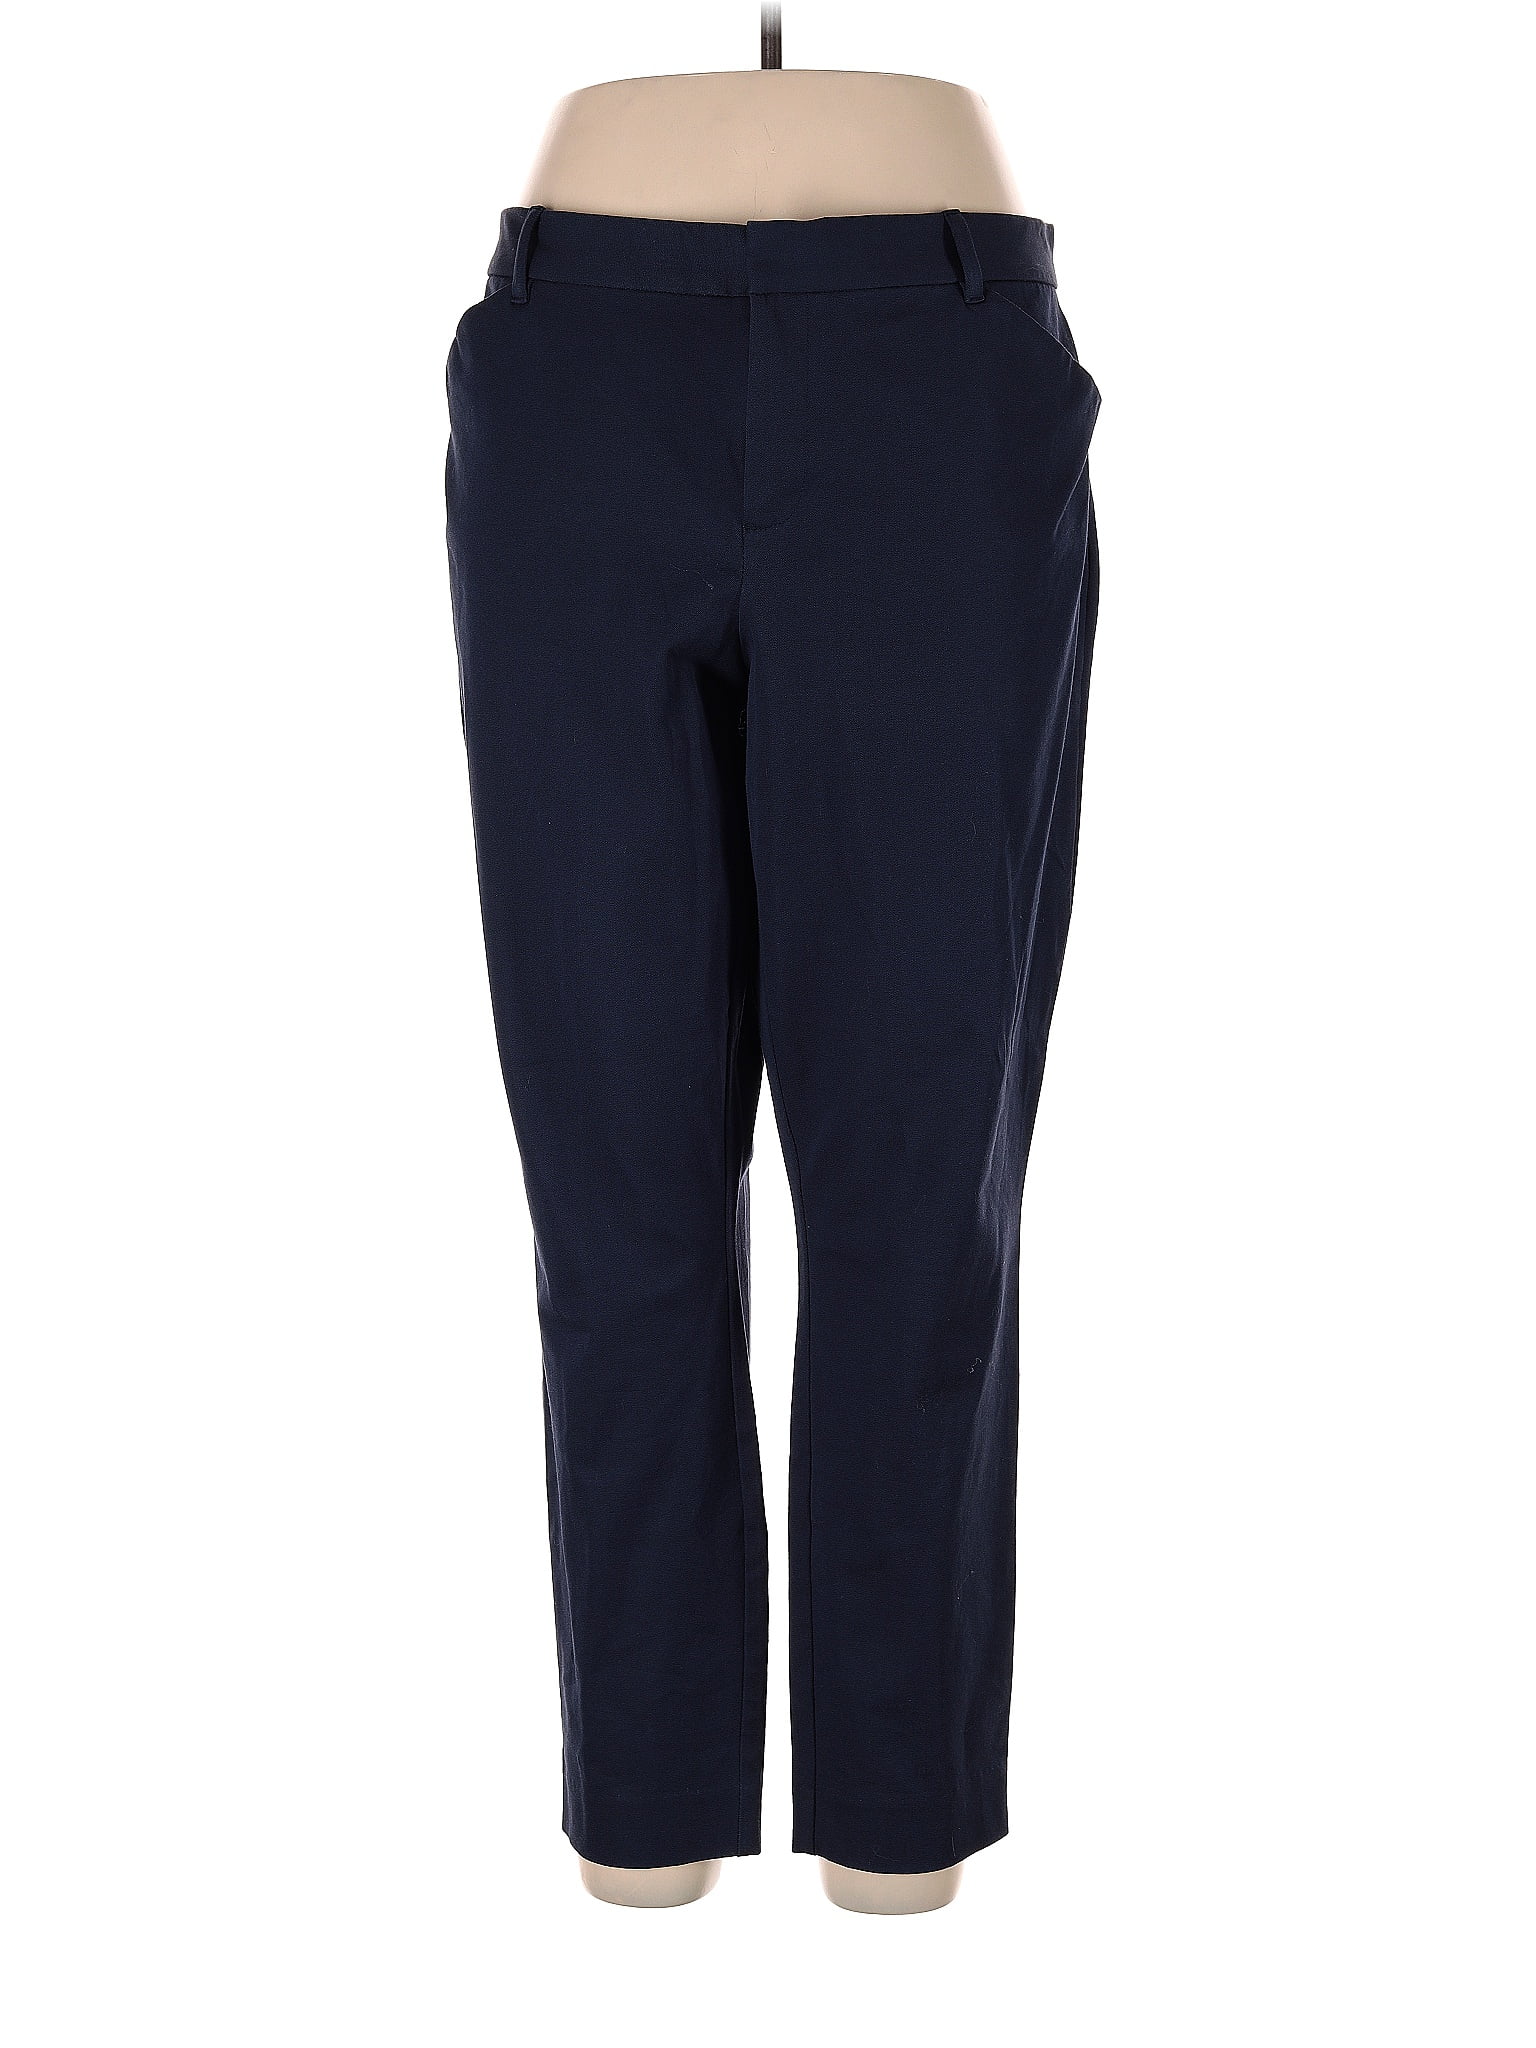 Gap Polka Dots Navy Blue Casual Pants Size 16 - 80% off